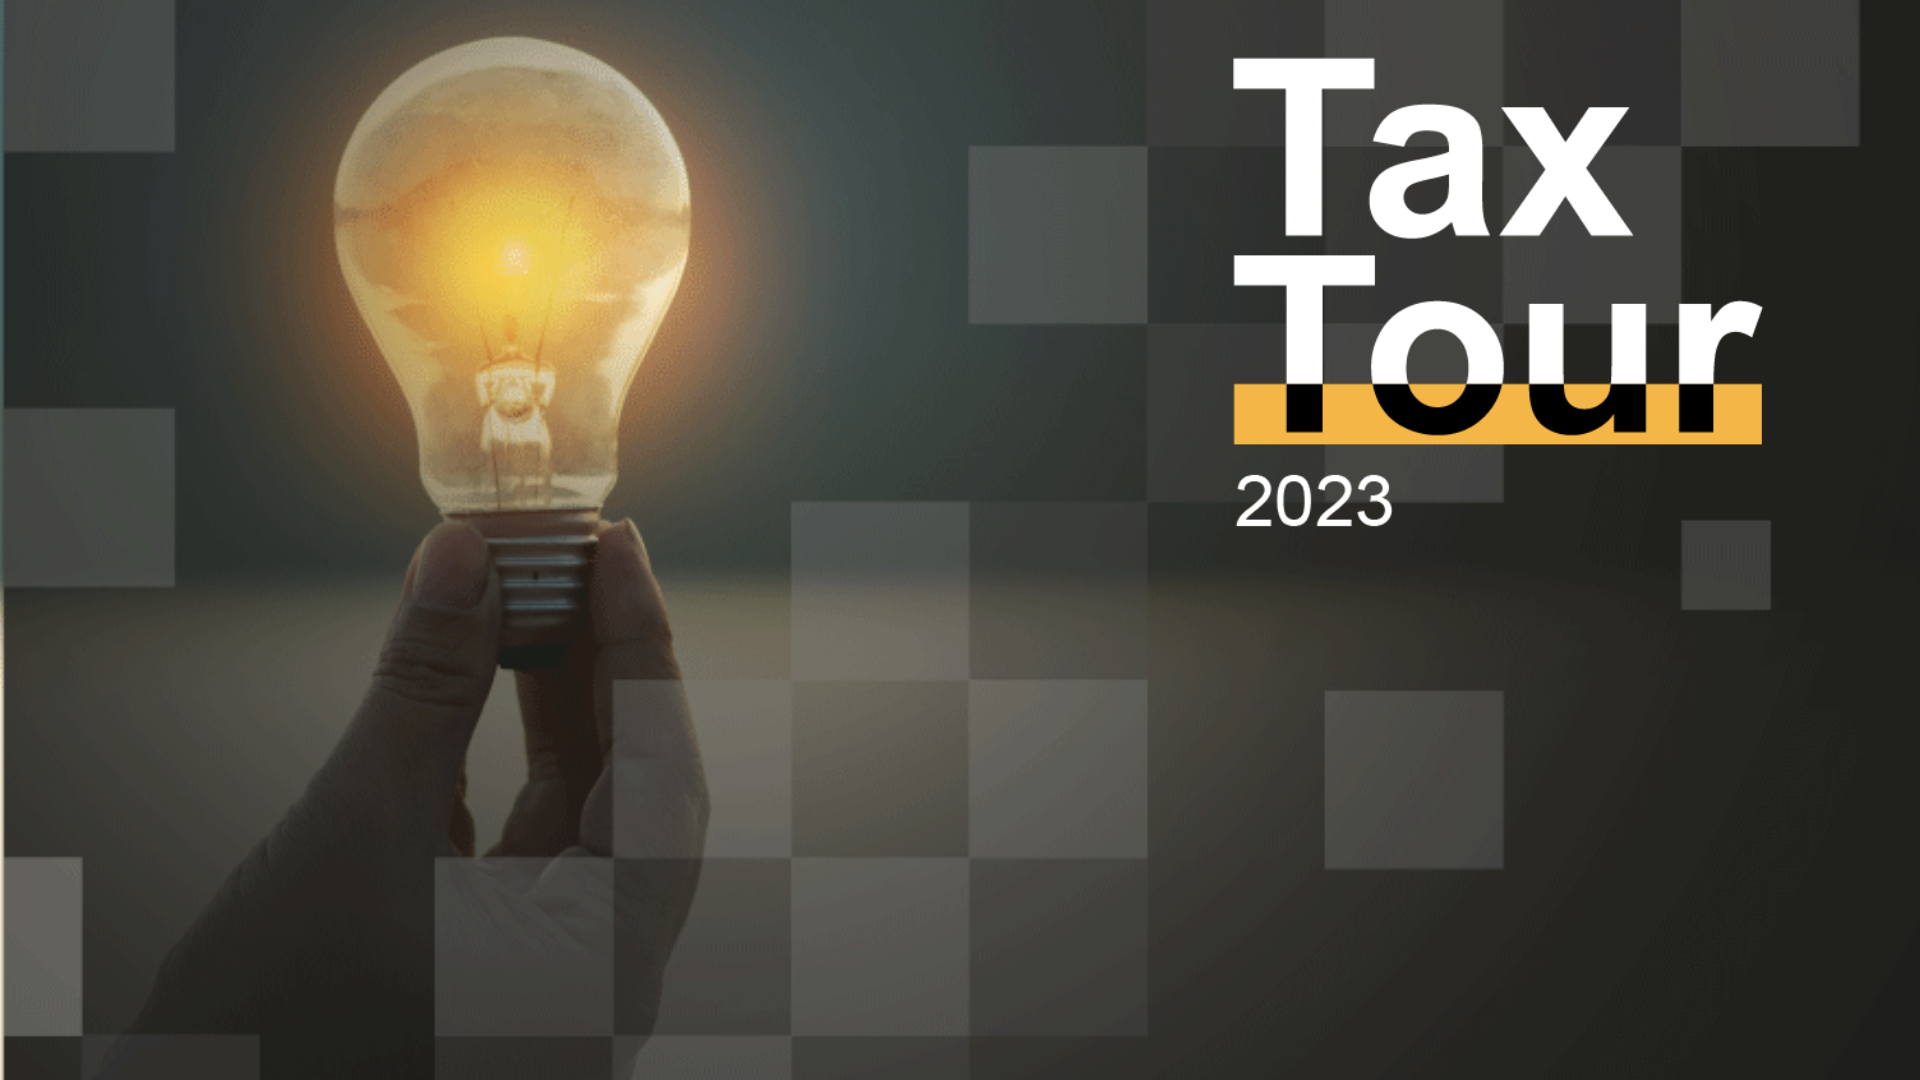 Tax-tour-2023 (1)